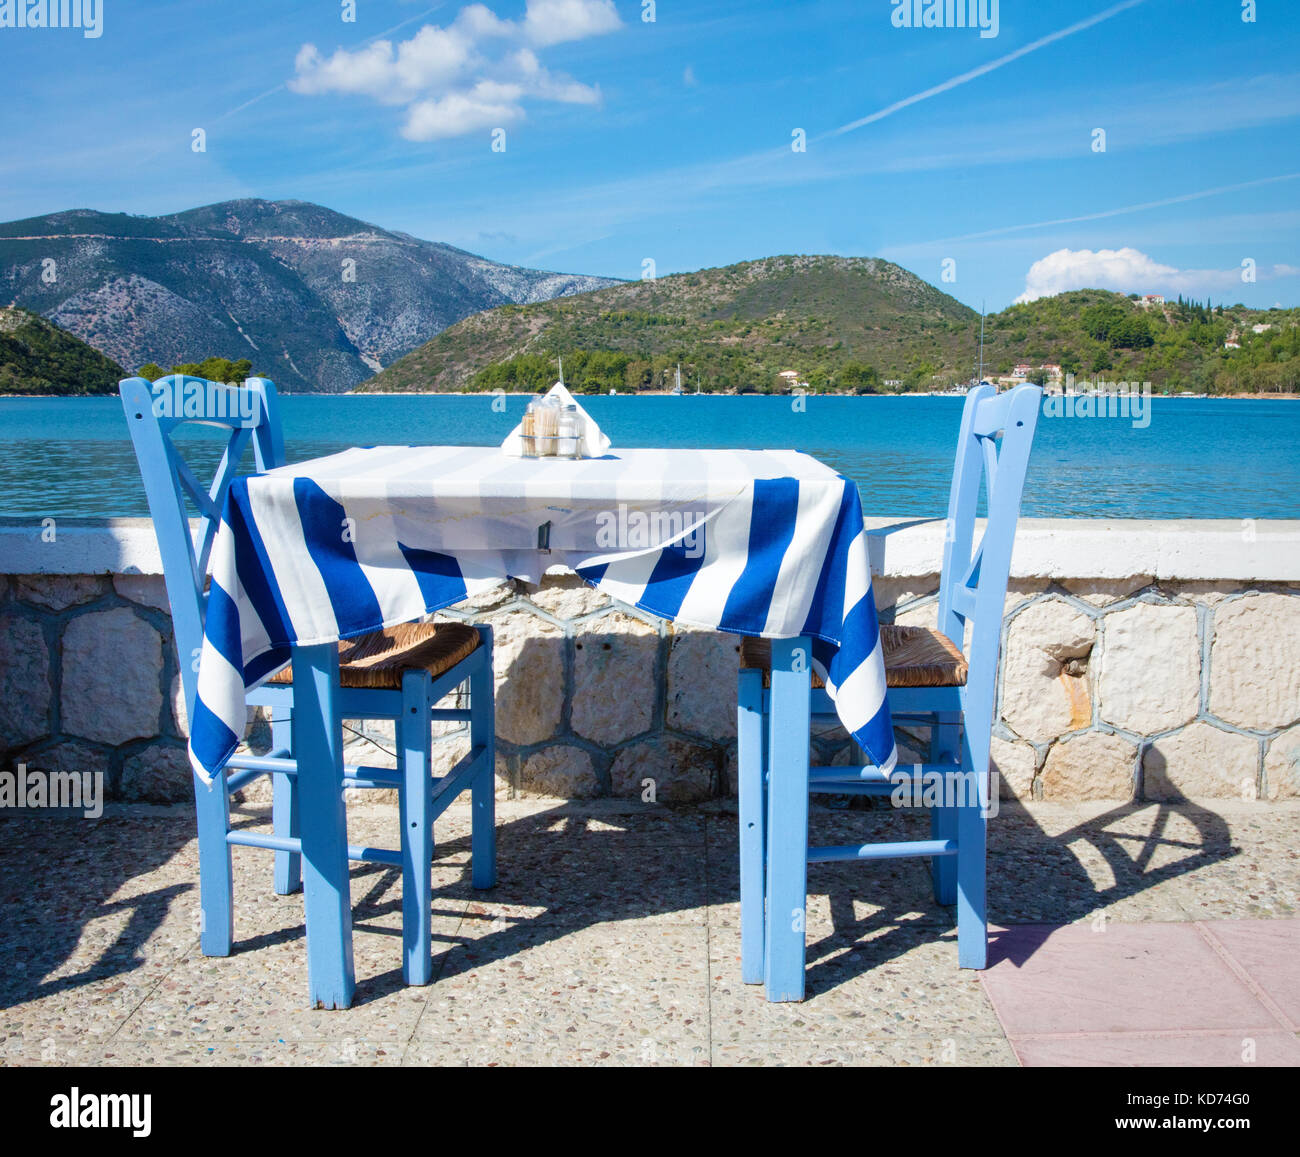 Blauer Tisch mit zwei Stühlen sowie griechische Flagge Tischdecke in einem Restaurant am Meer in Vathy, der Hauptstadt von Ithaka, Ionische Inseln Griechenland Stockfoto